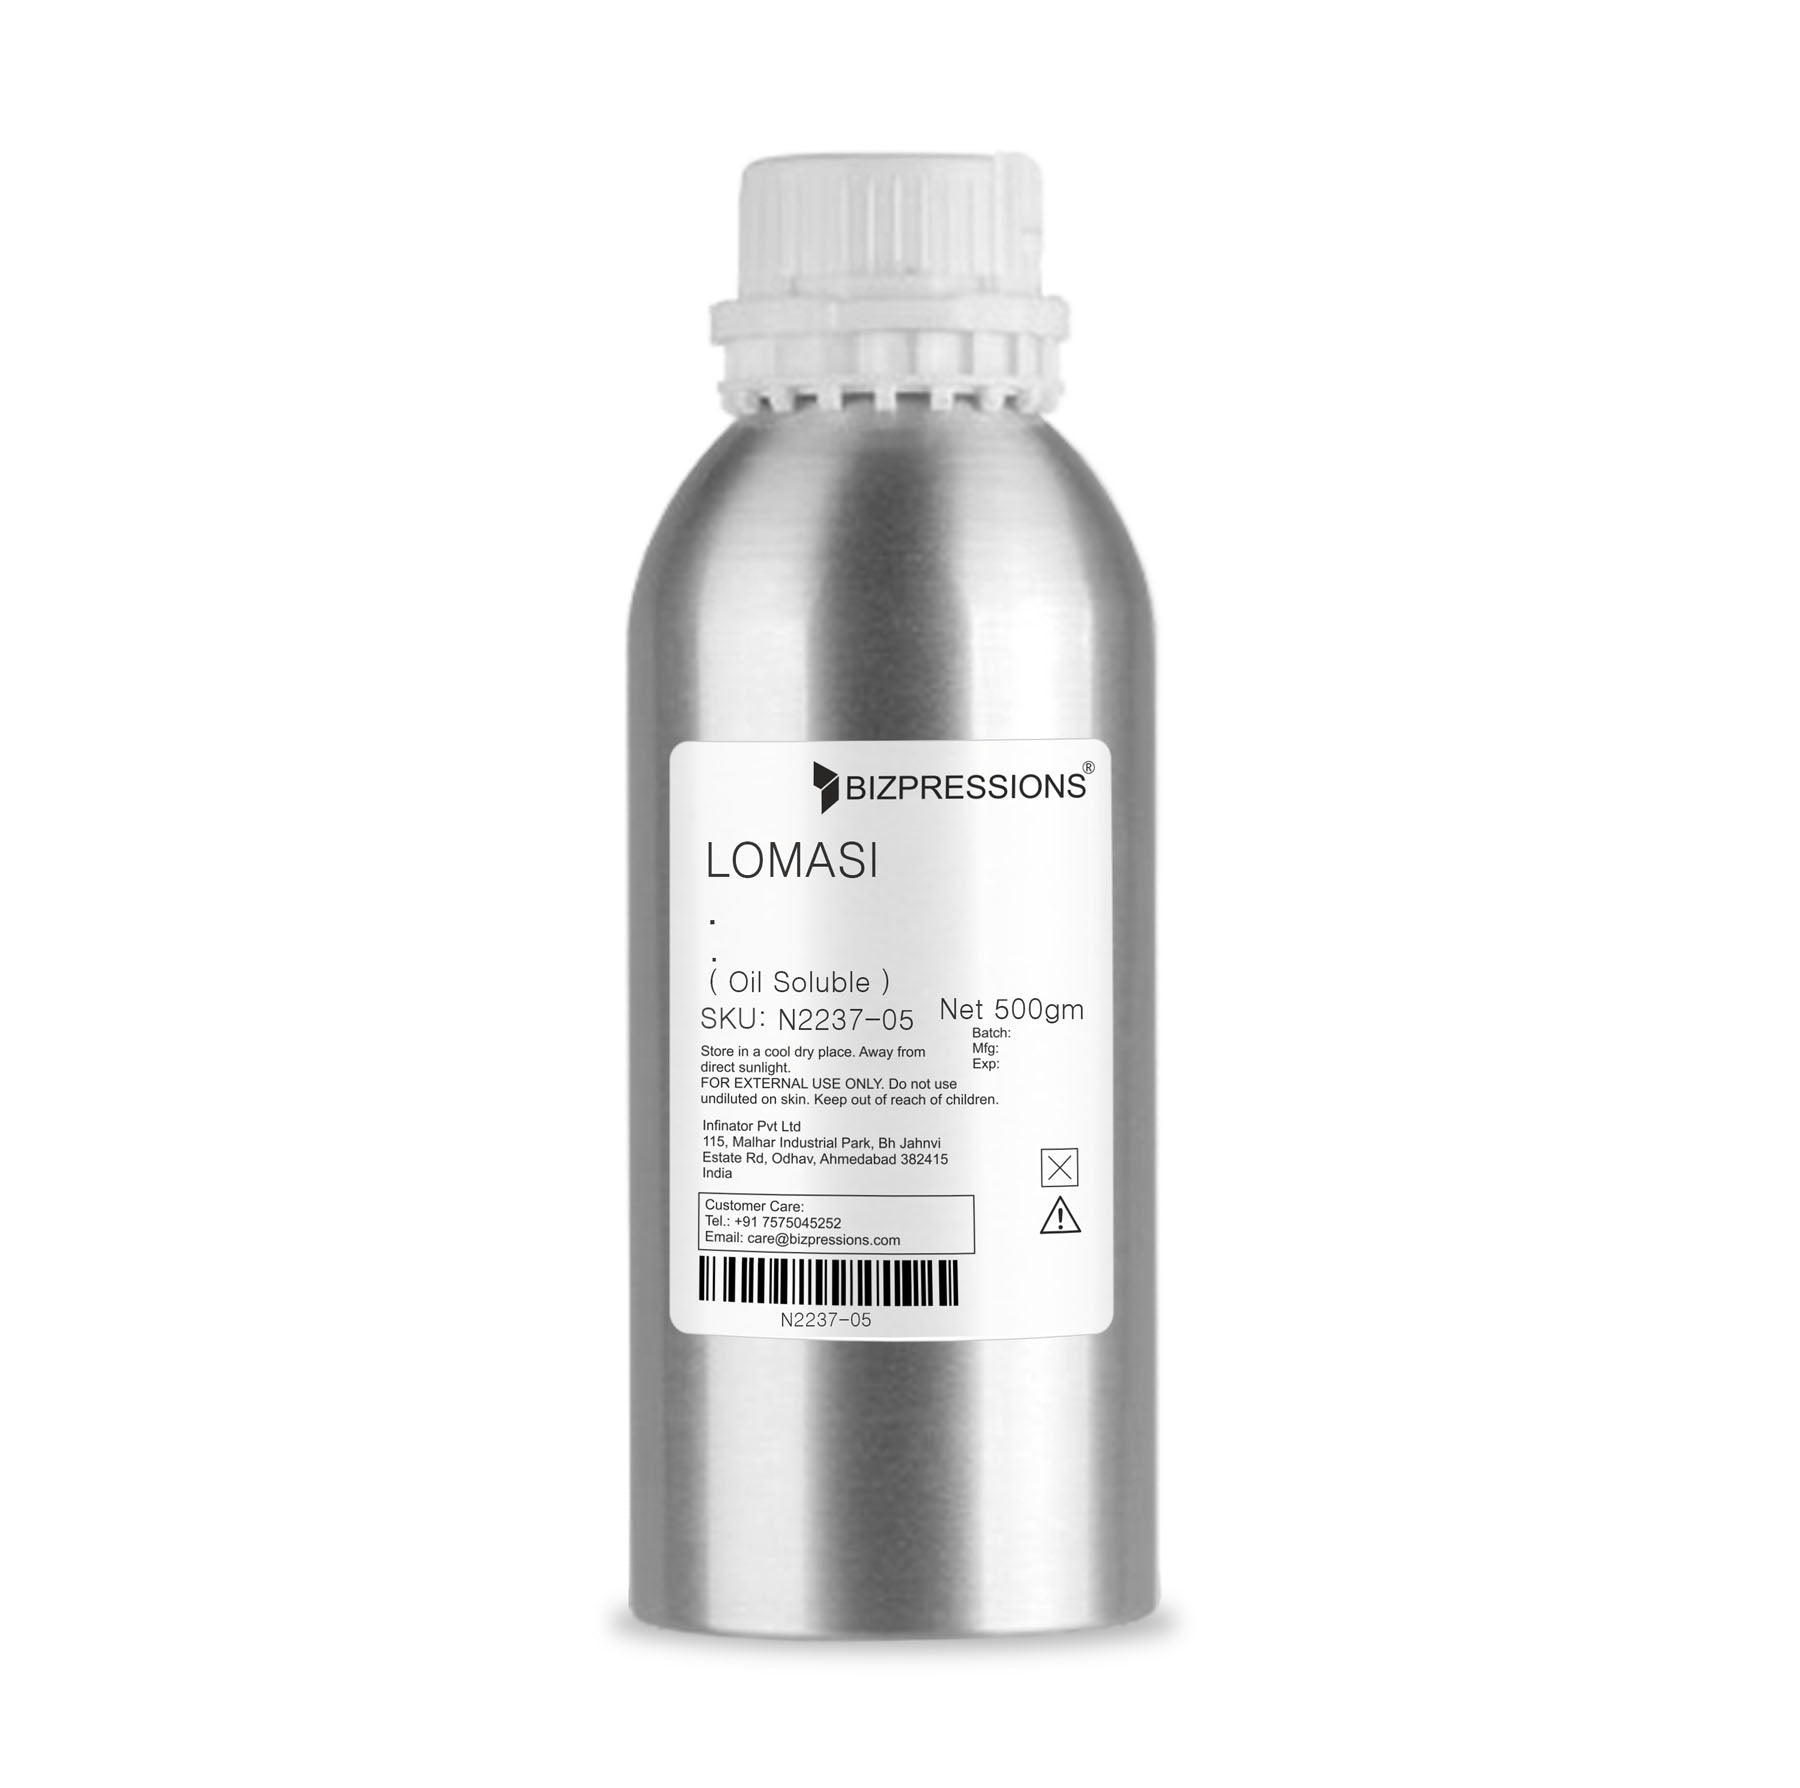 LOMASI - Fragrance ( Oil Soluble ) - 500 gm